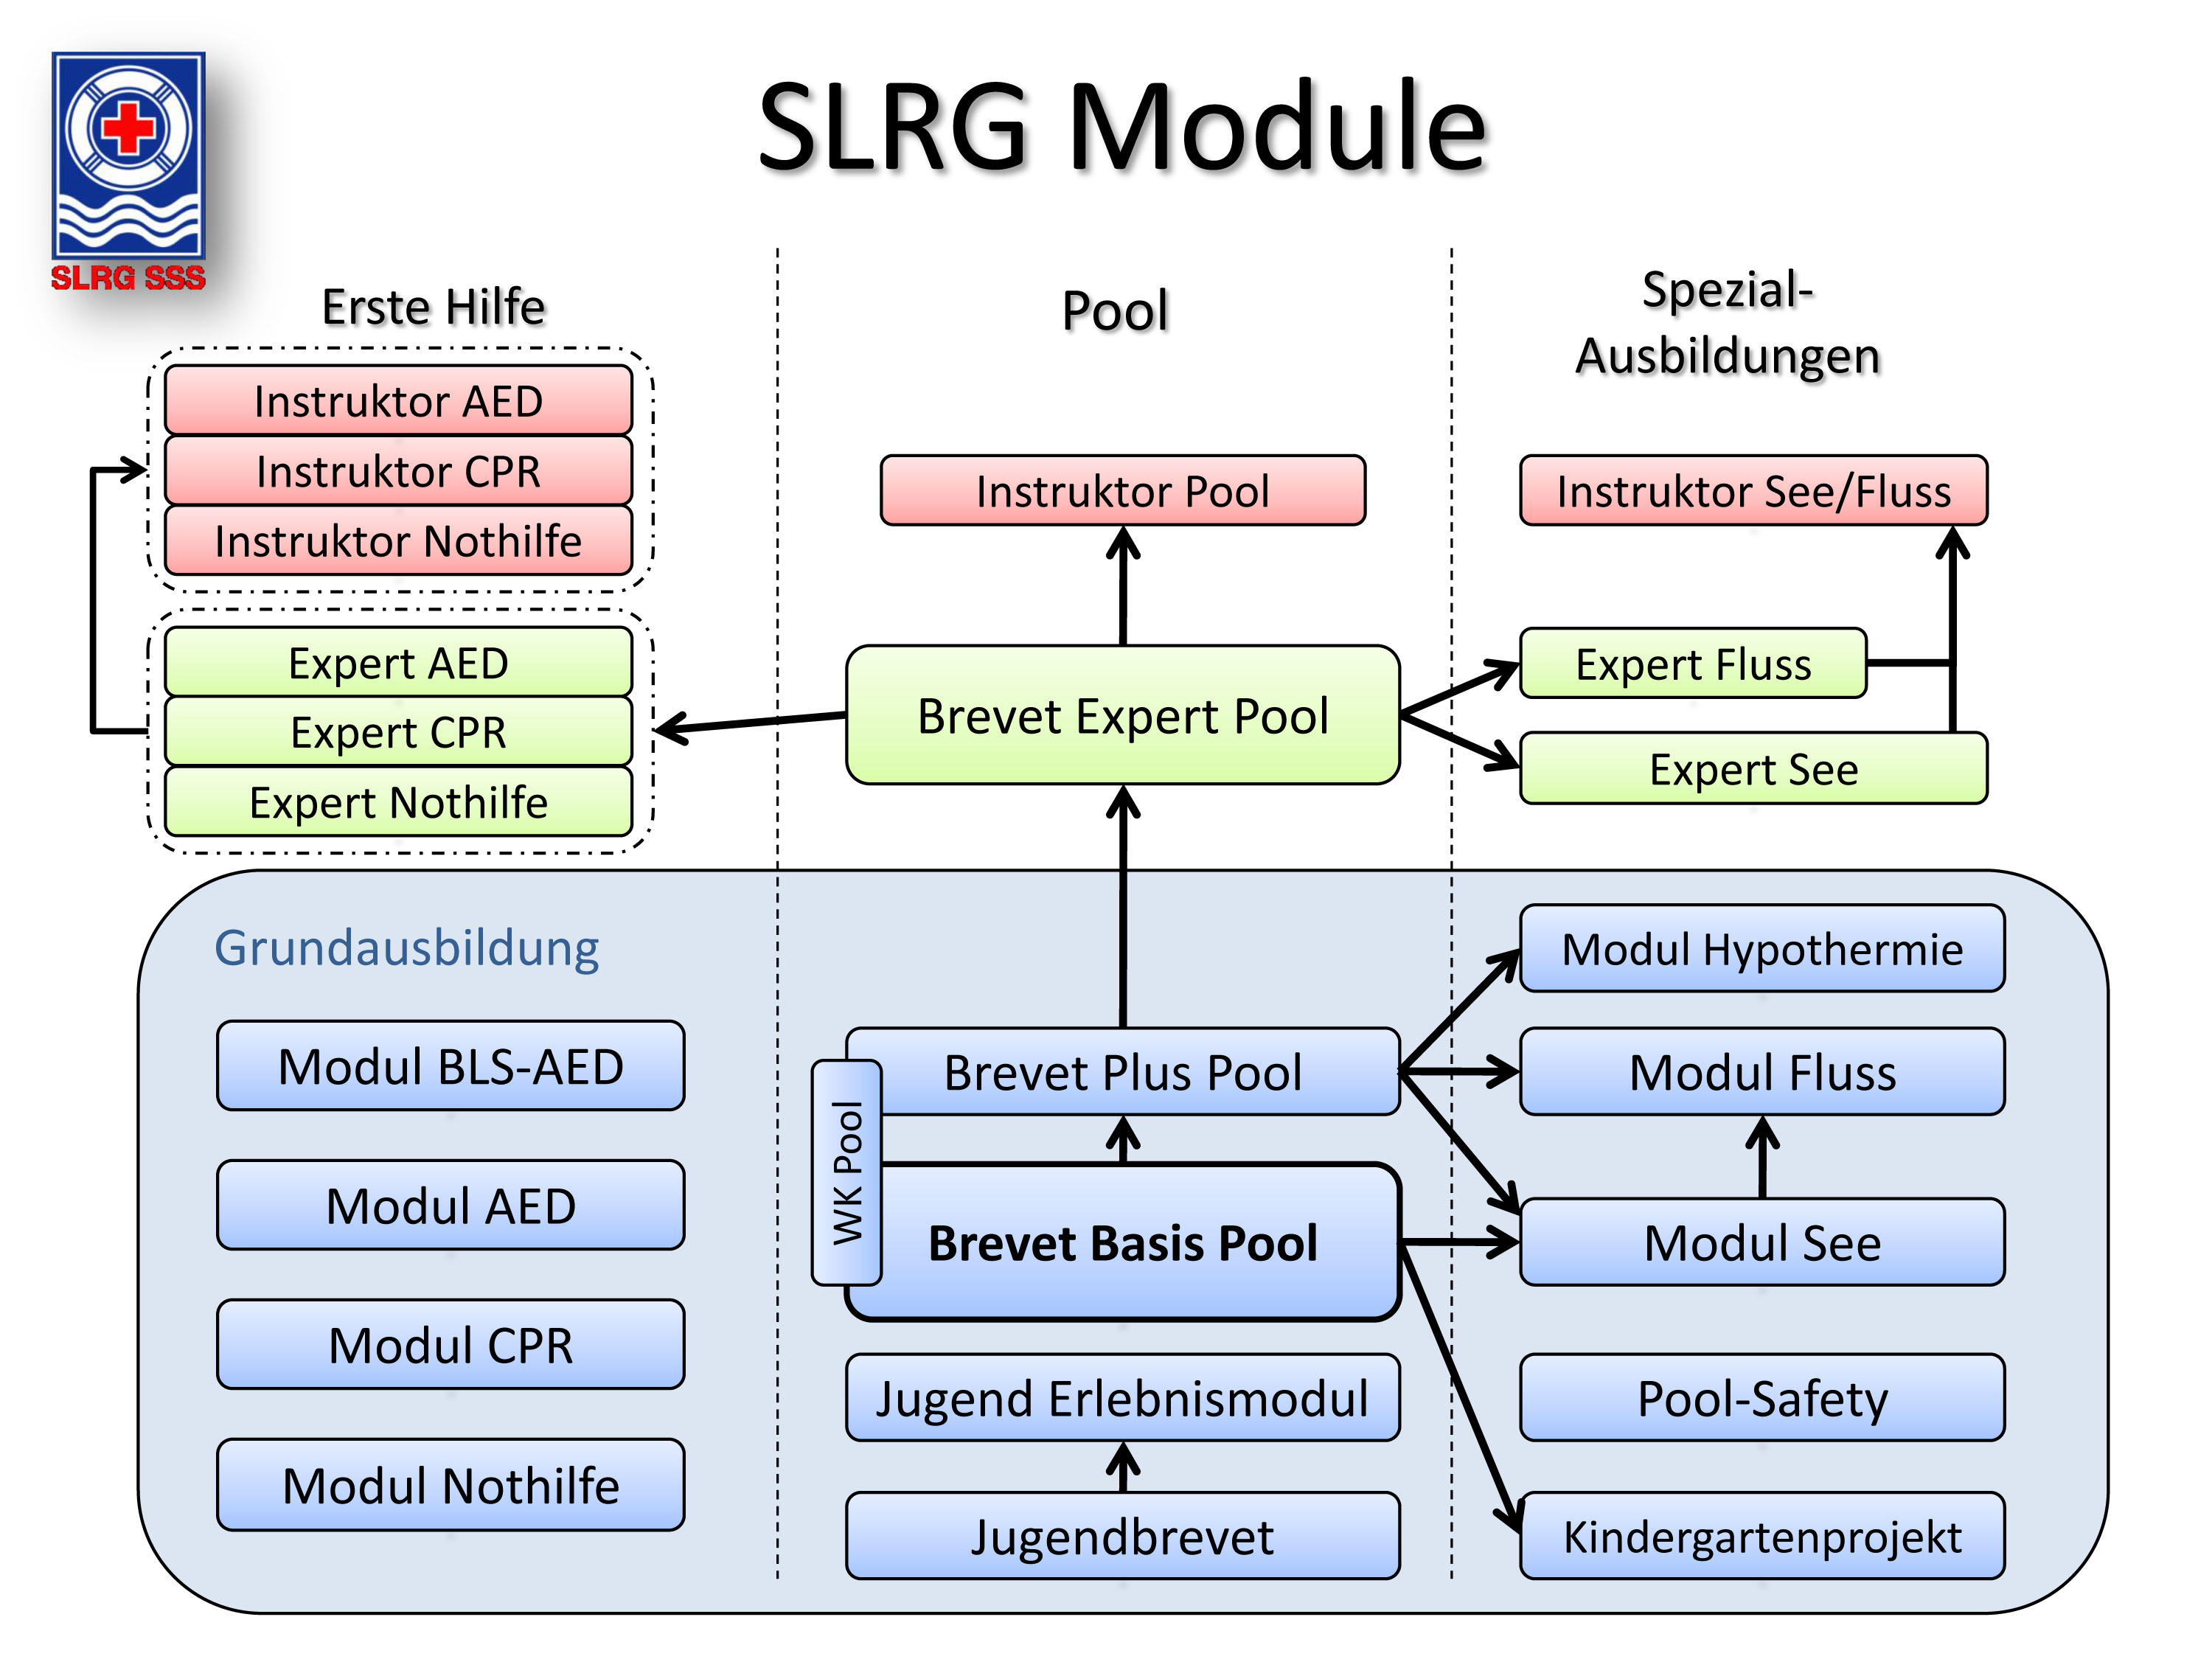 Uebersicht der Module der SLRG